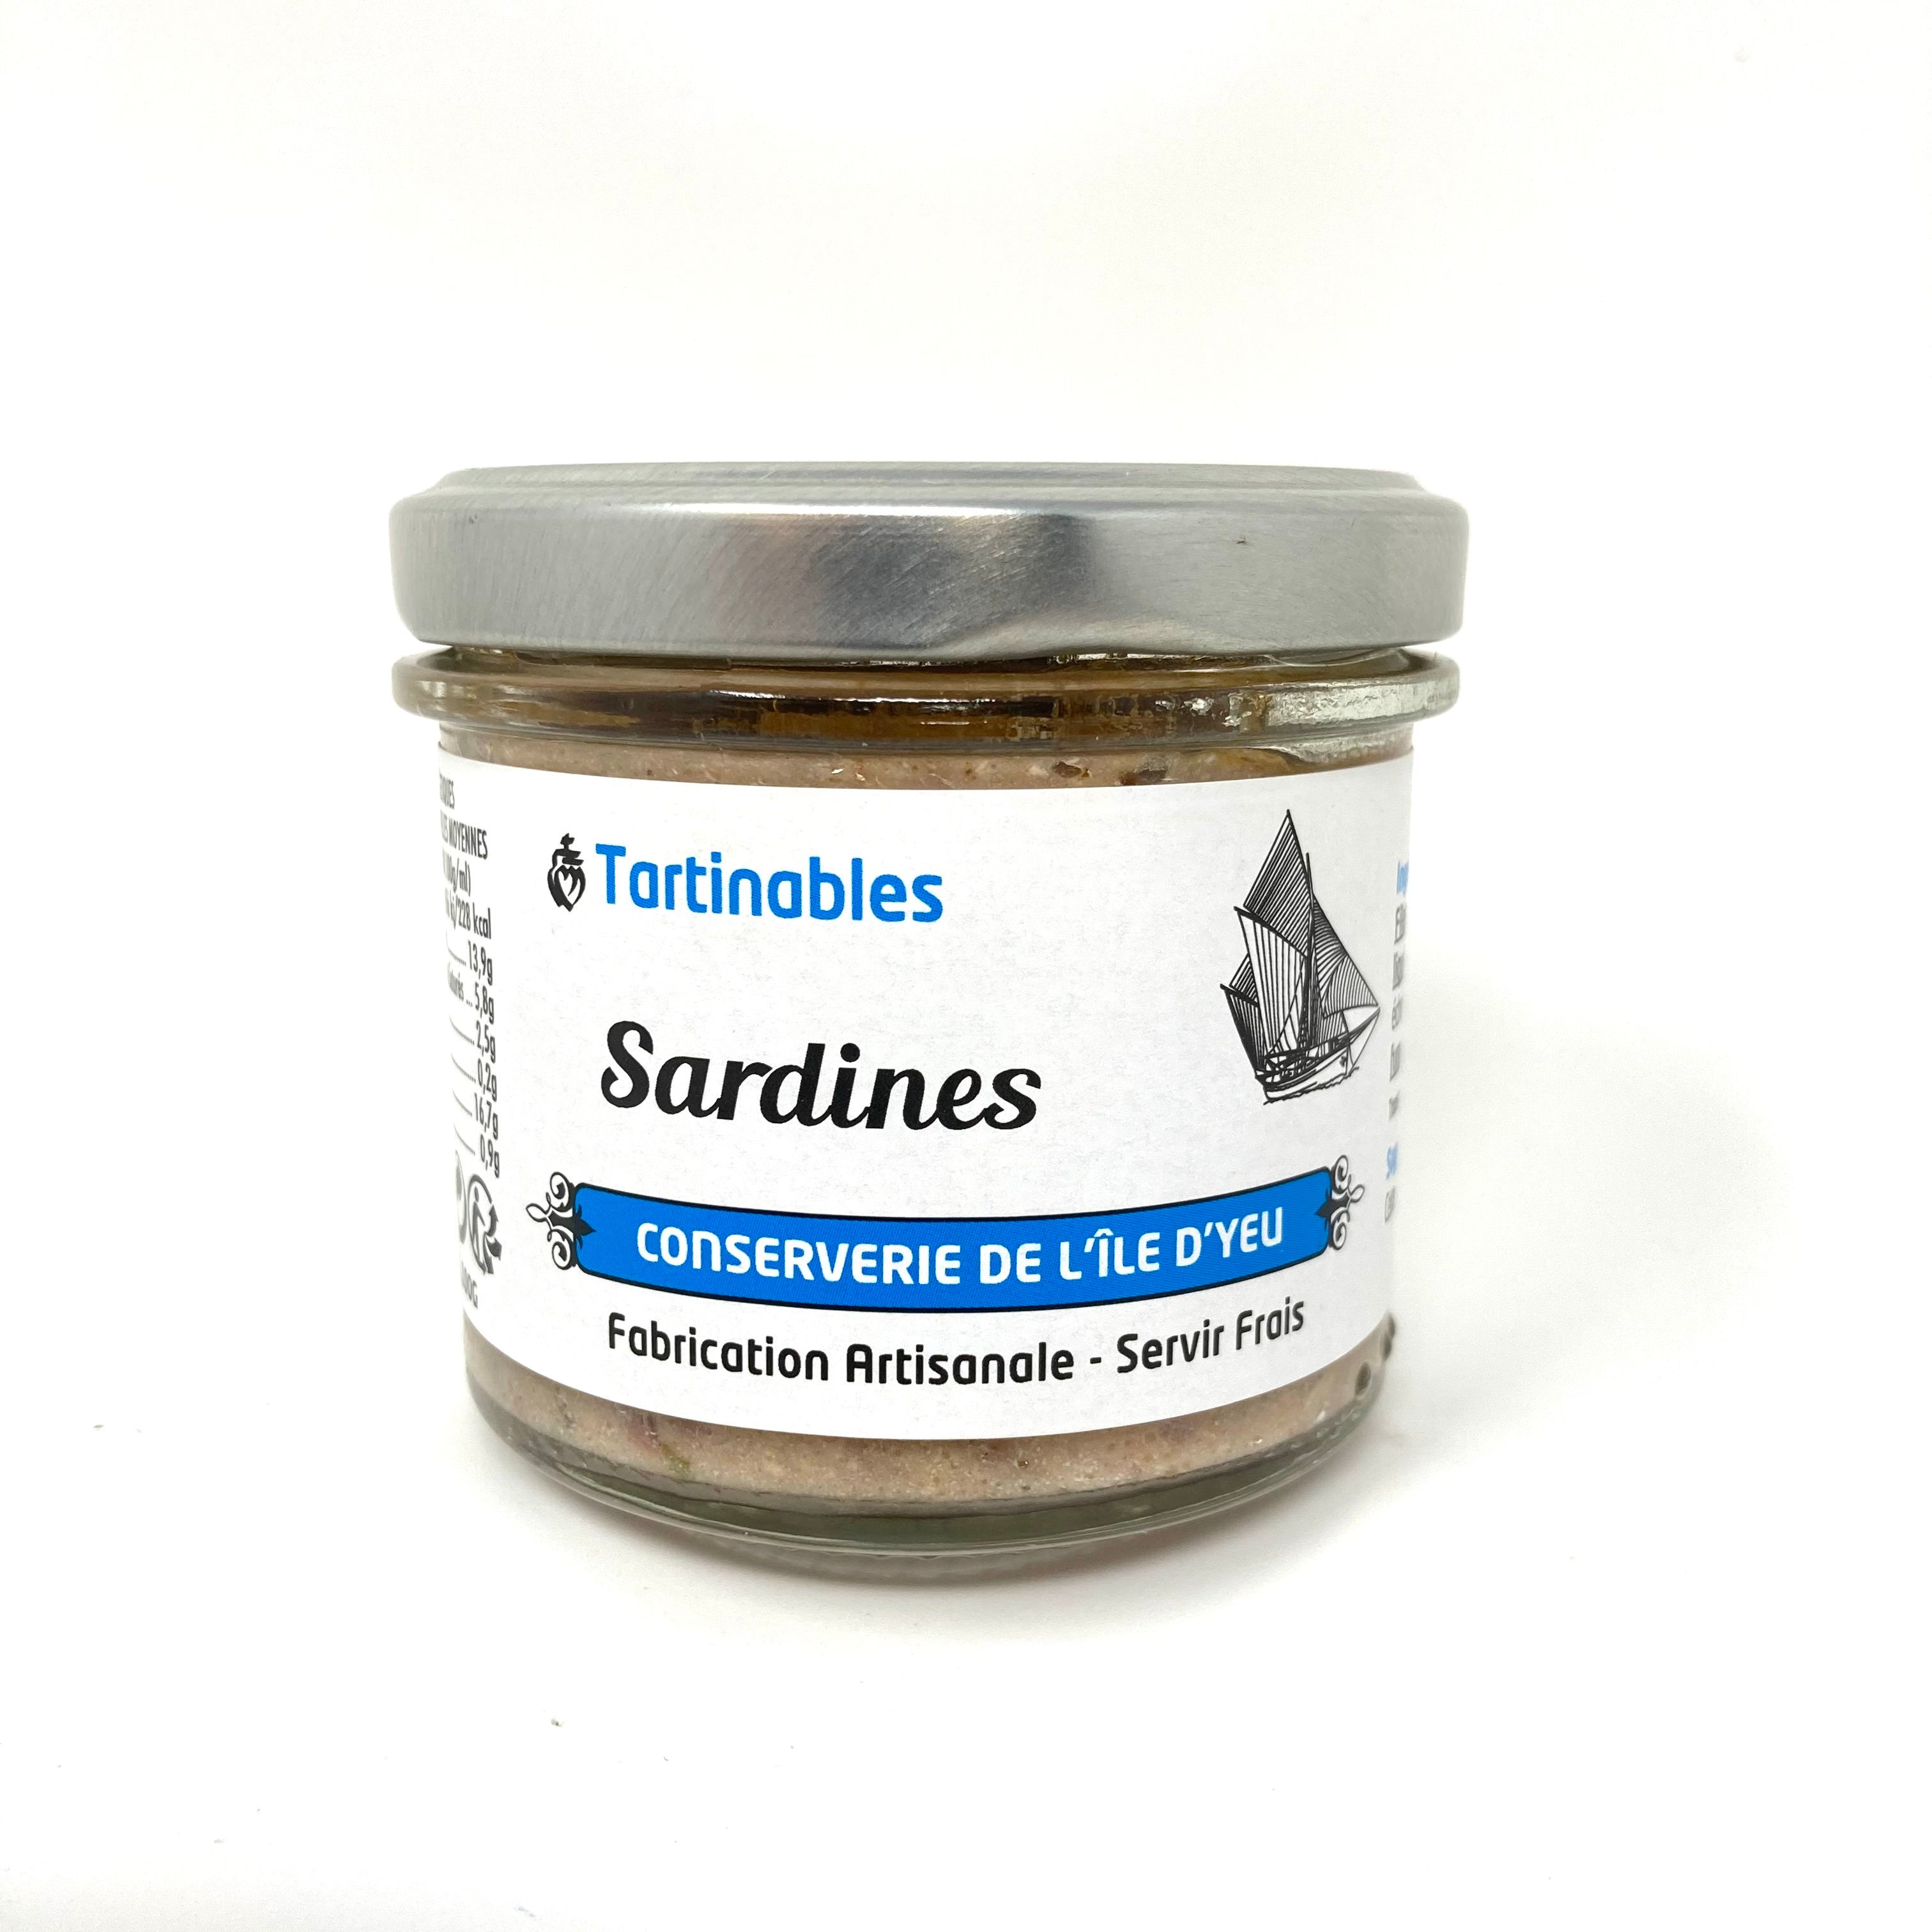 Sardines - Conserverie de l'île d'Yeu